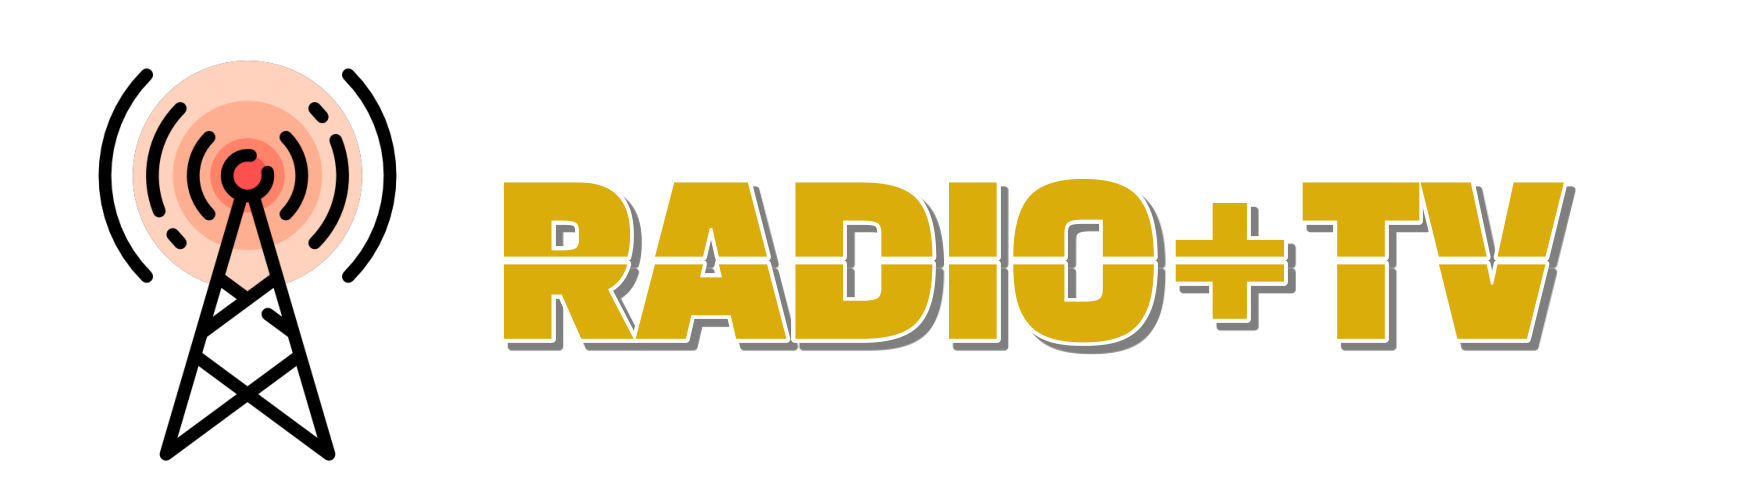 Anbieter von Radio- & TV-Sendern